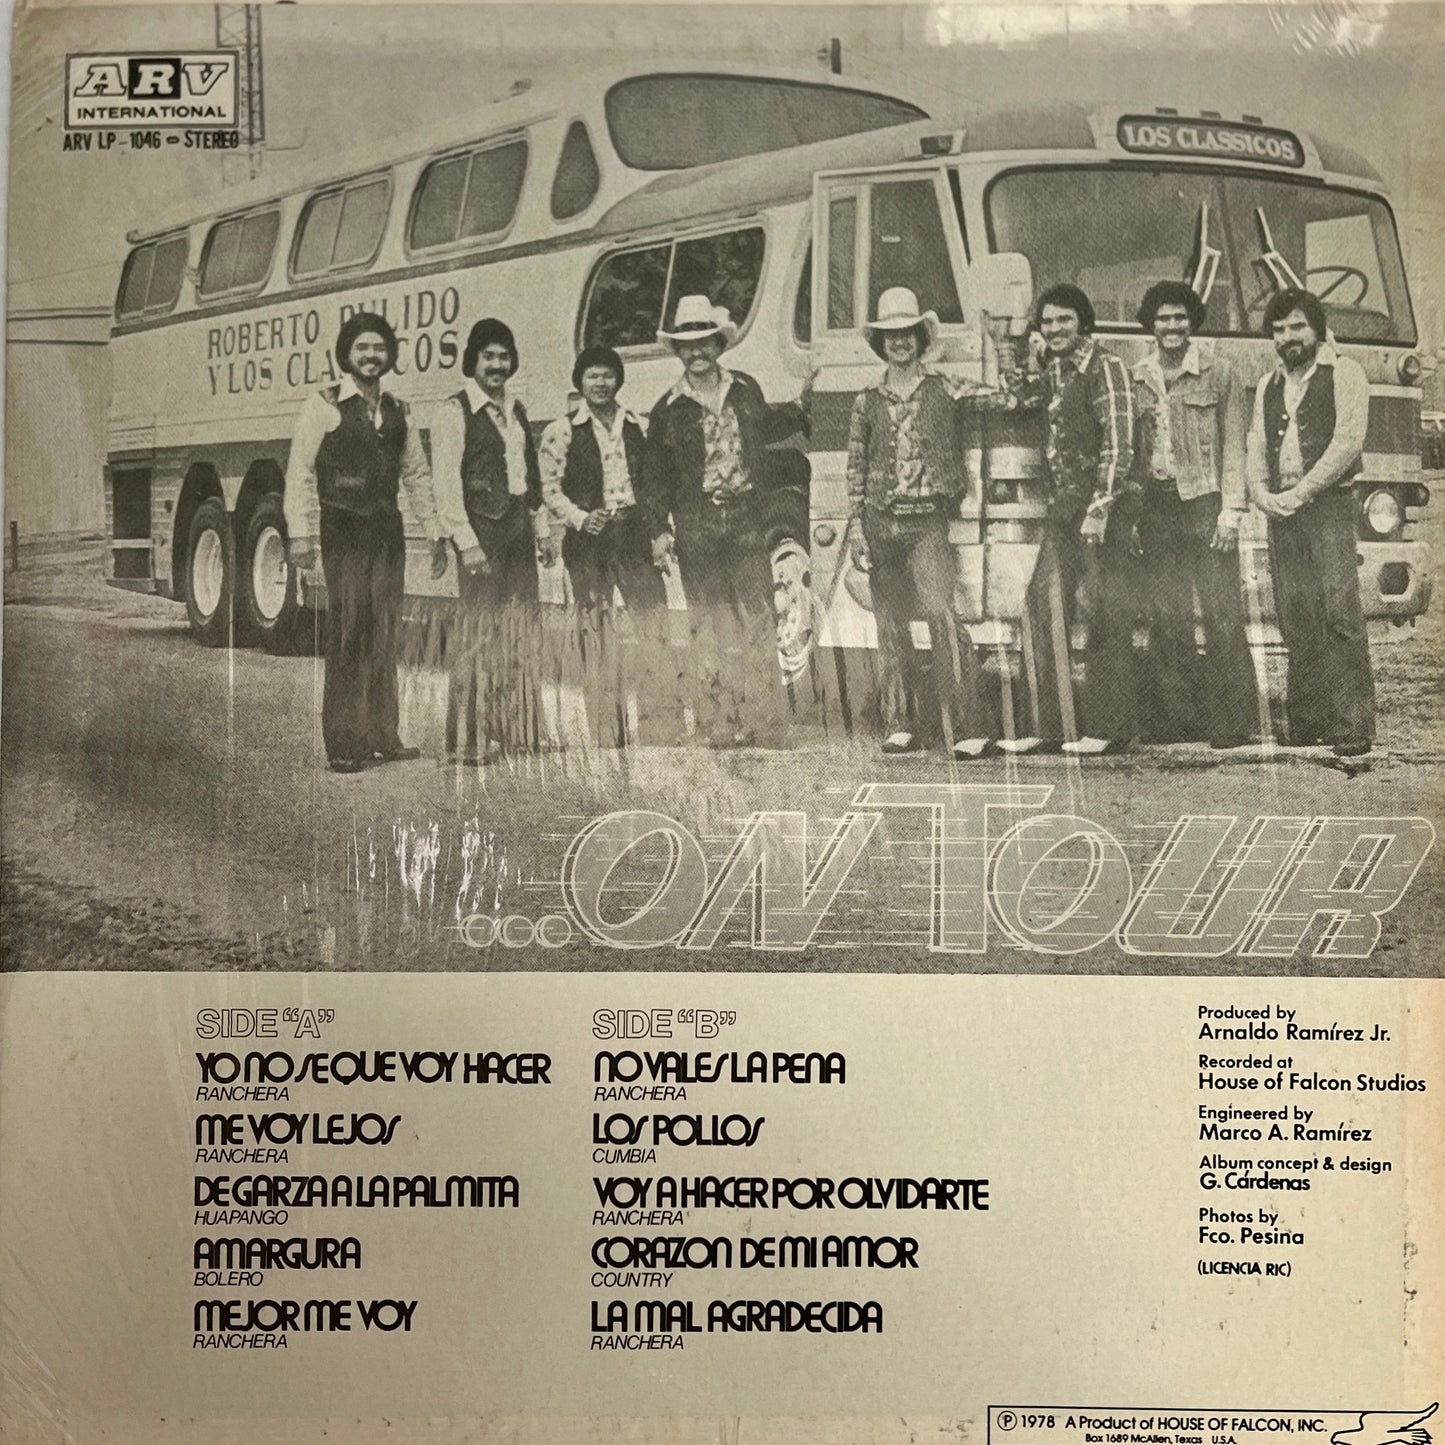 Roberto Pulido Y Los Clasicos - On Tour (Vinyl)